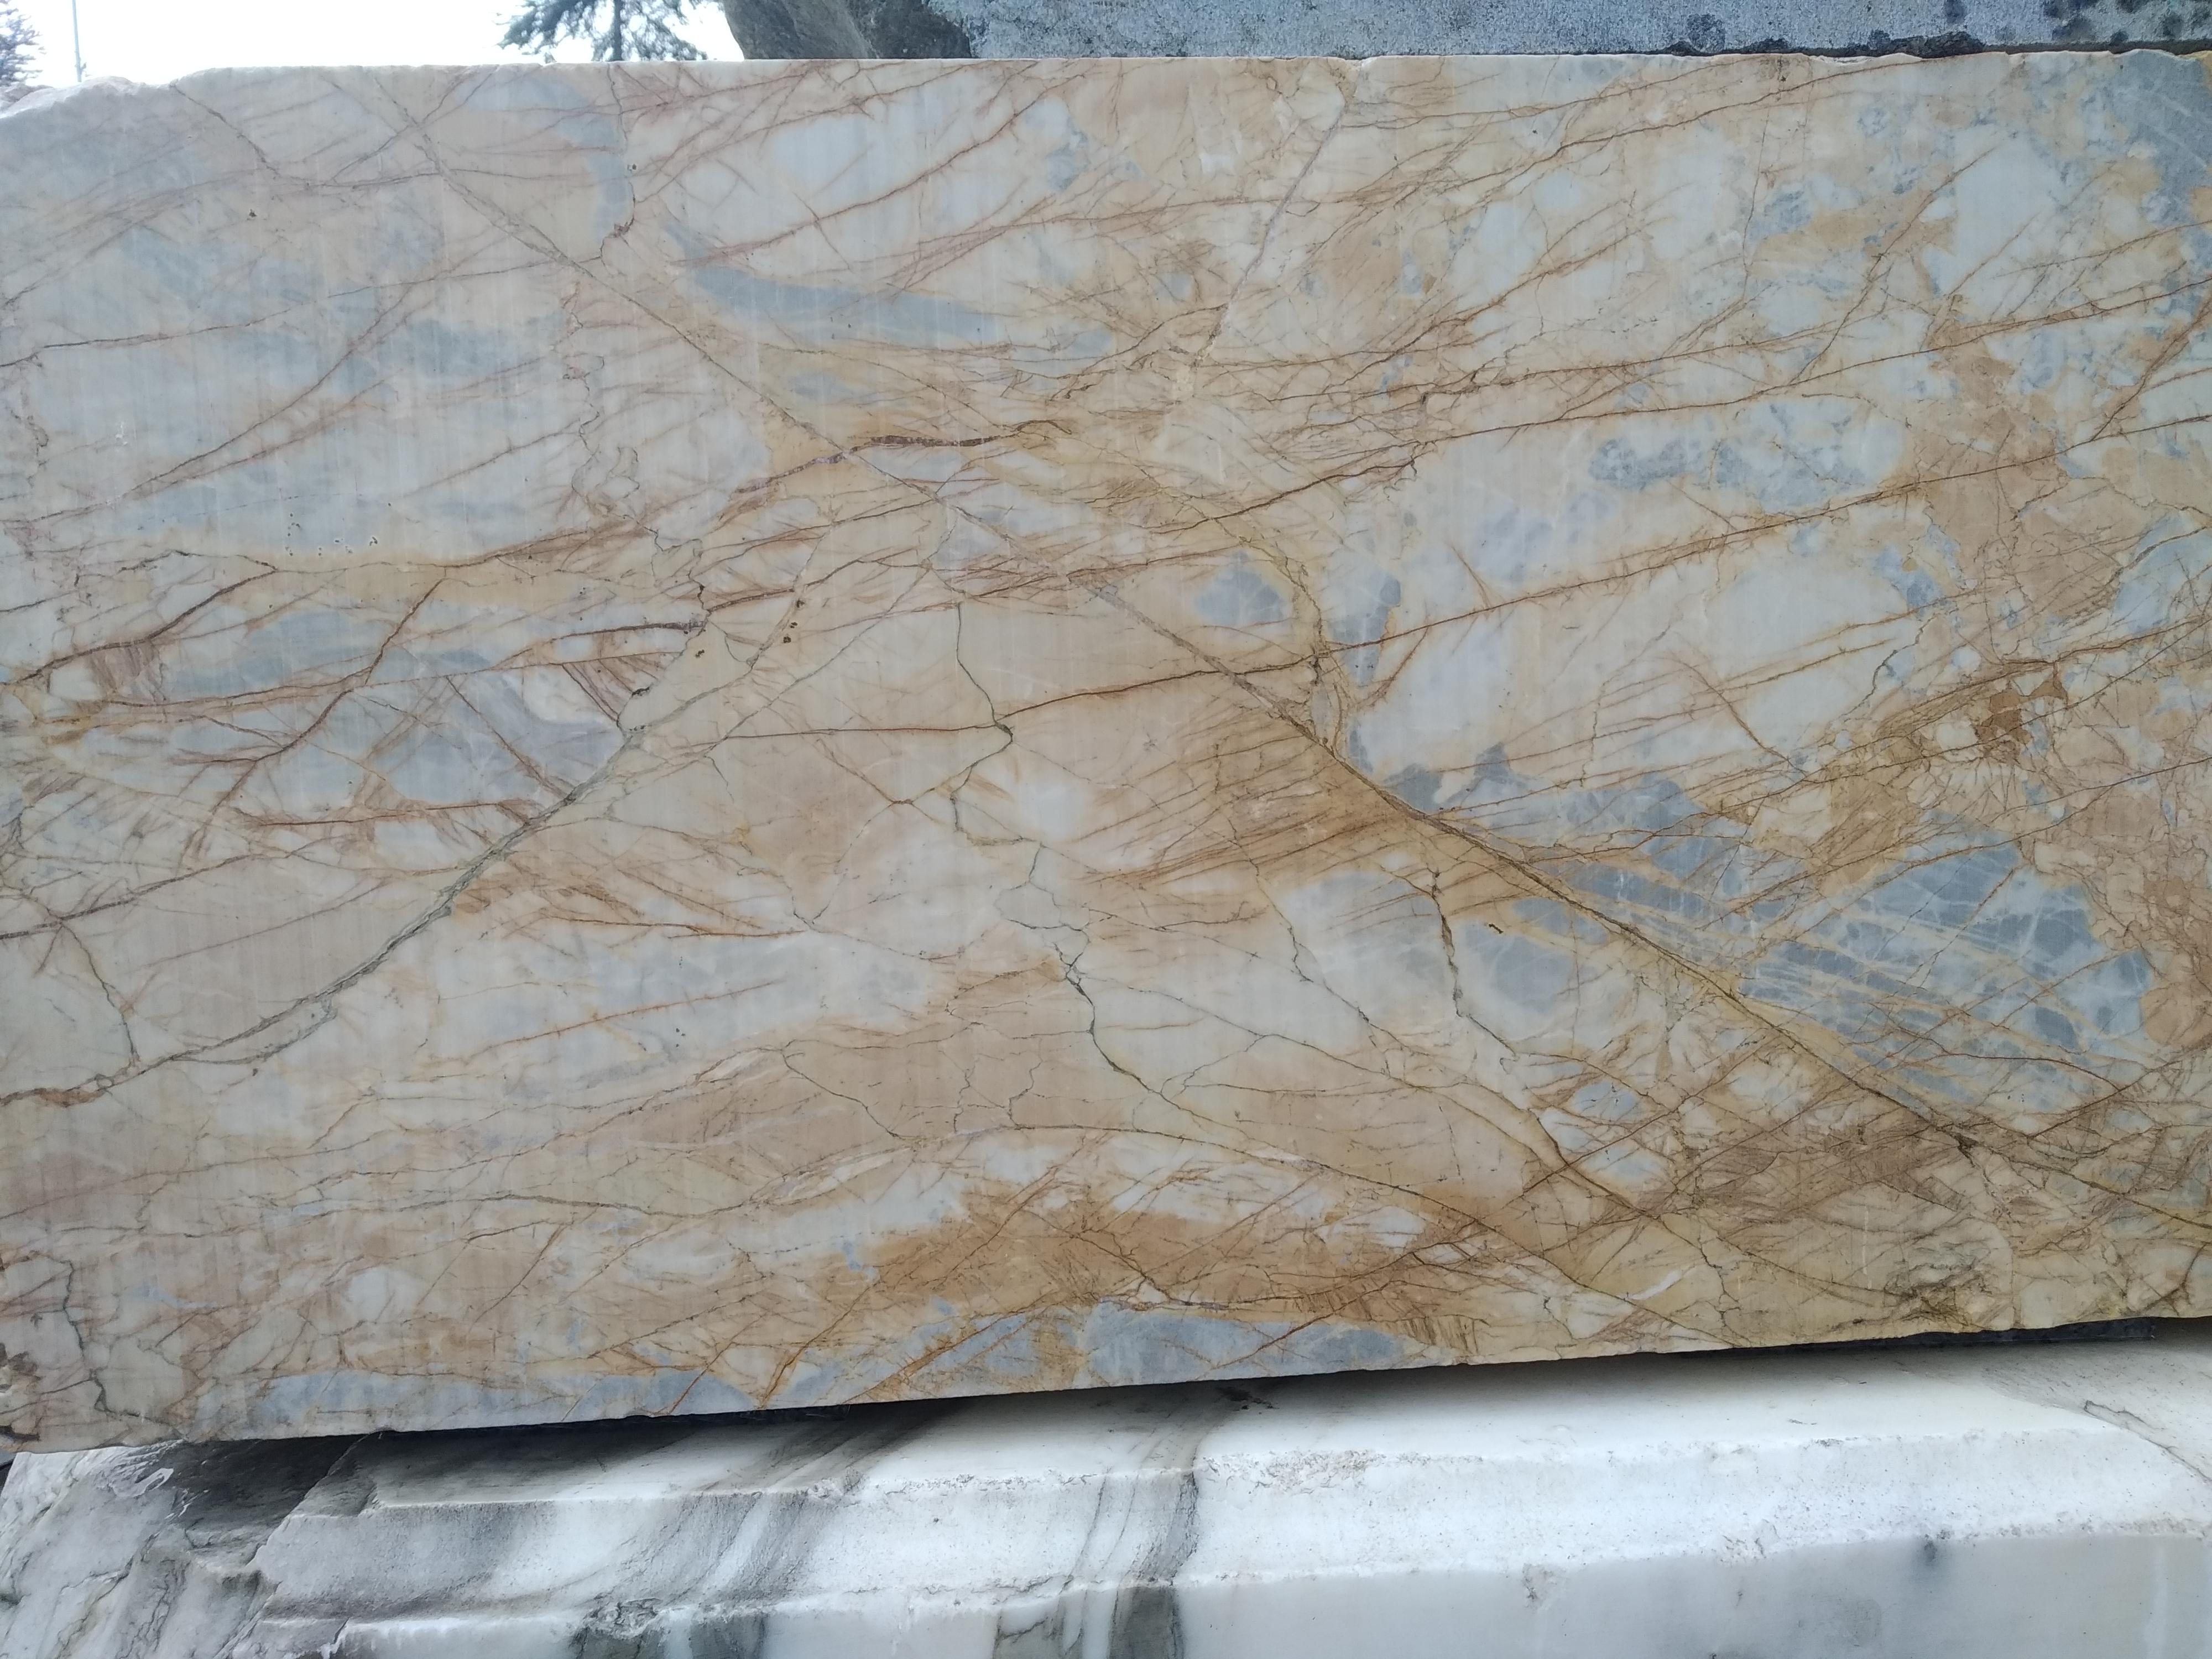 Marmor Travertin Kalksteinplatten
Zuschnitt nach Ihren Wünschen direkt aus den Carrara-Bergwerken
Wir können die Farben für Ihre Projekte anpassen
Sehen Sie auch unsere anderen Marmorspülbecken-Produkte.

